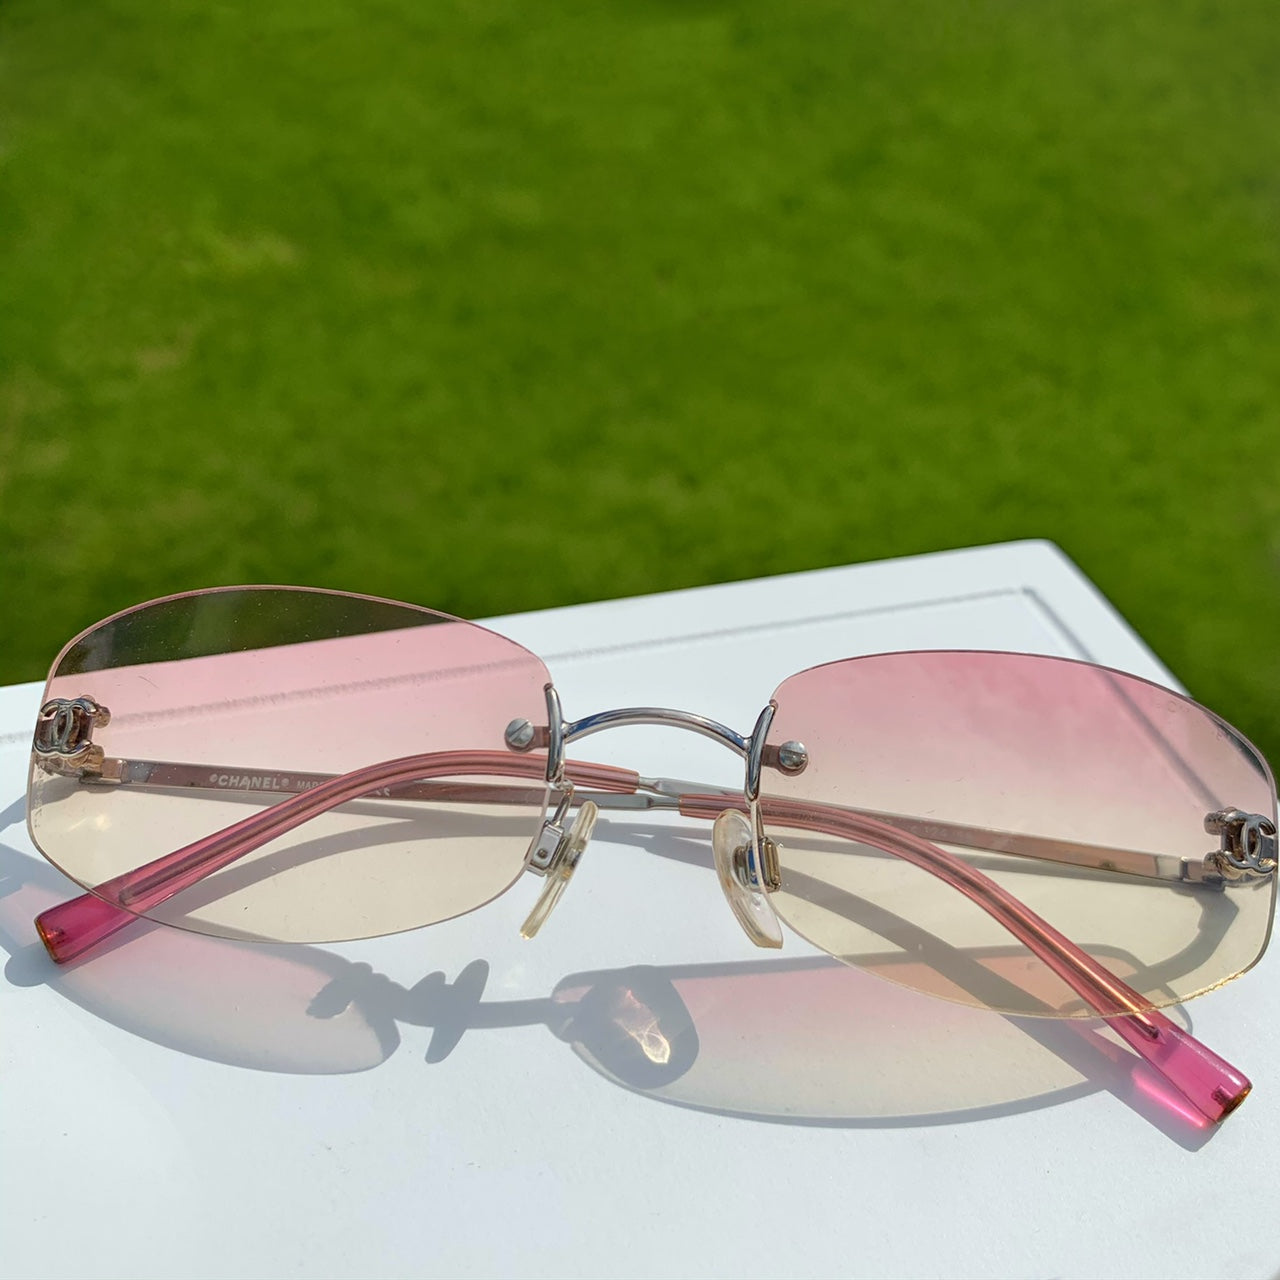 Chanel CC Logo Mini Sunglasses in Pink